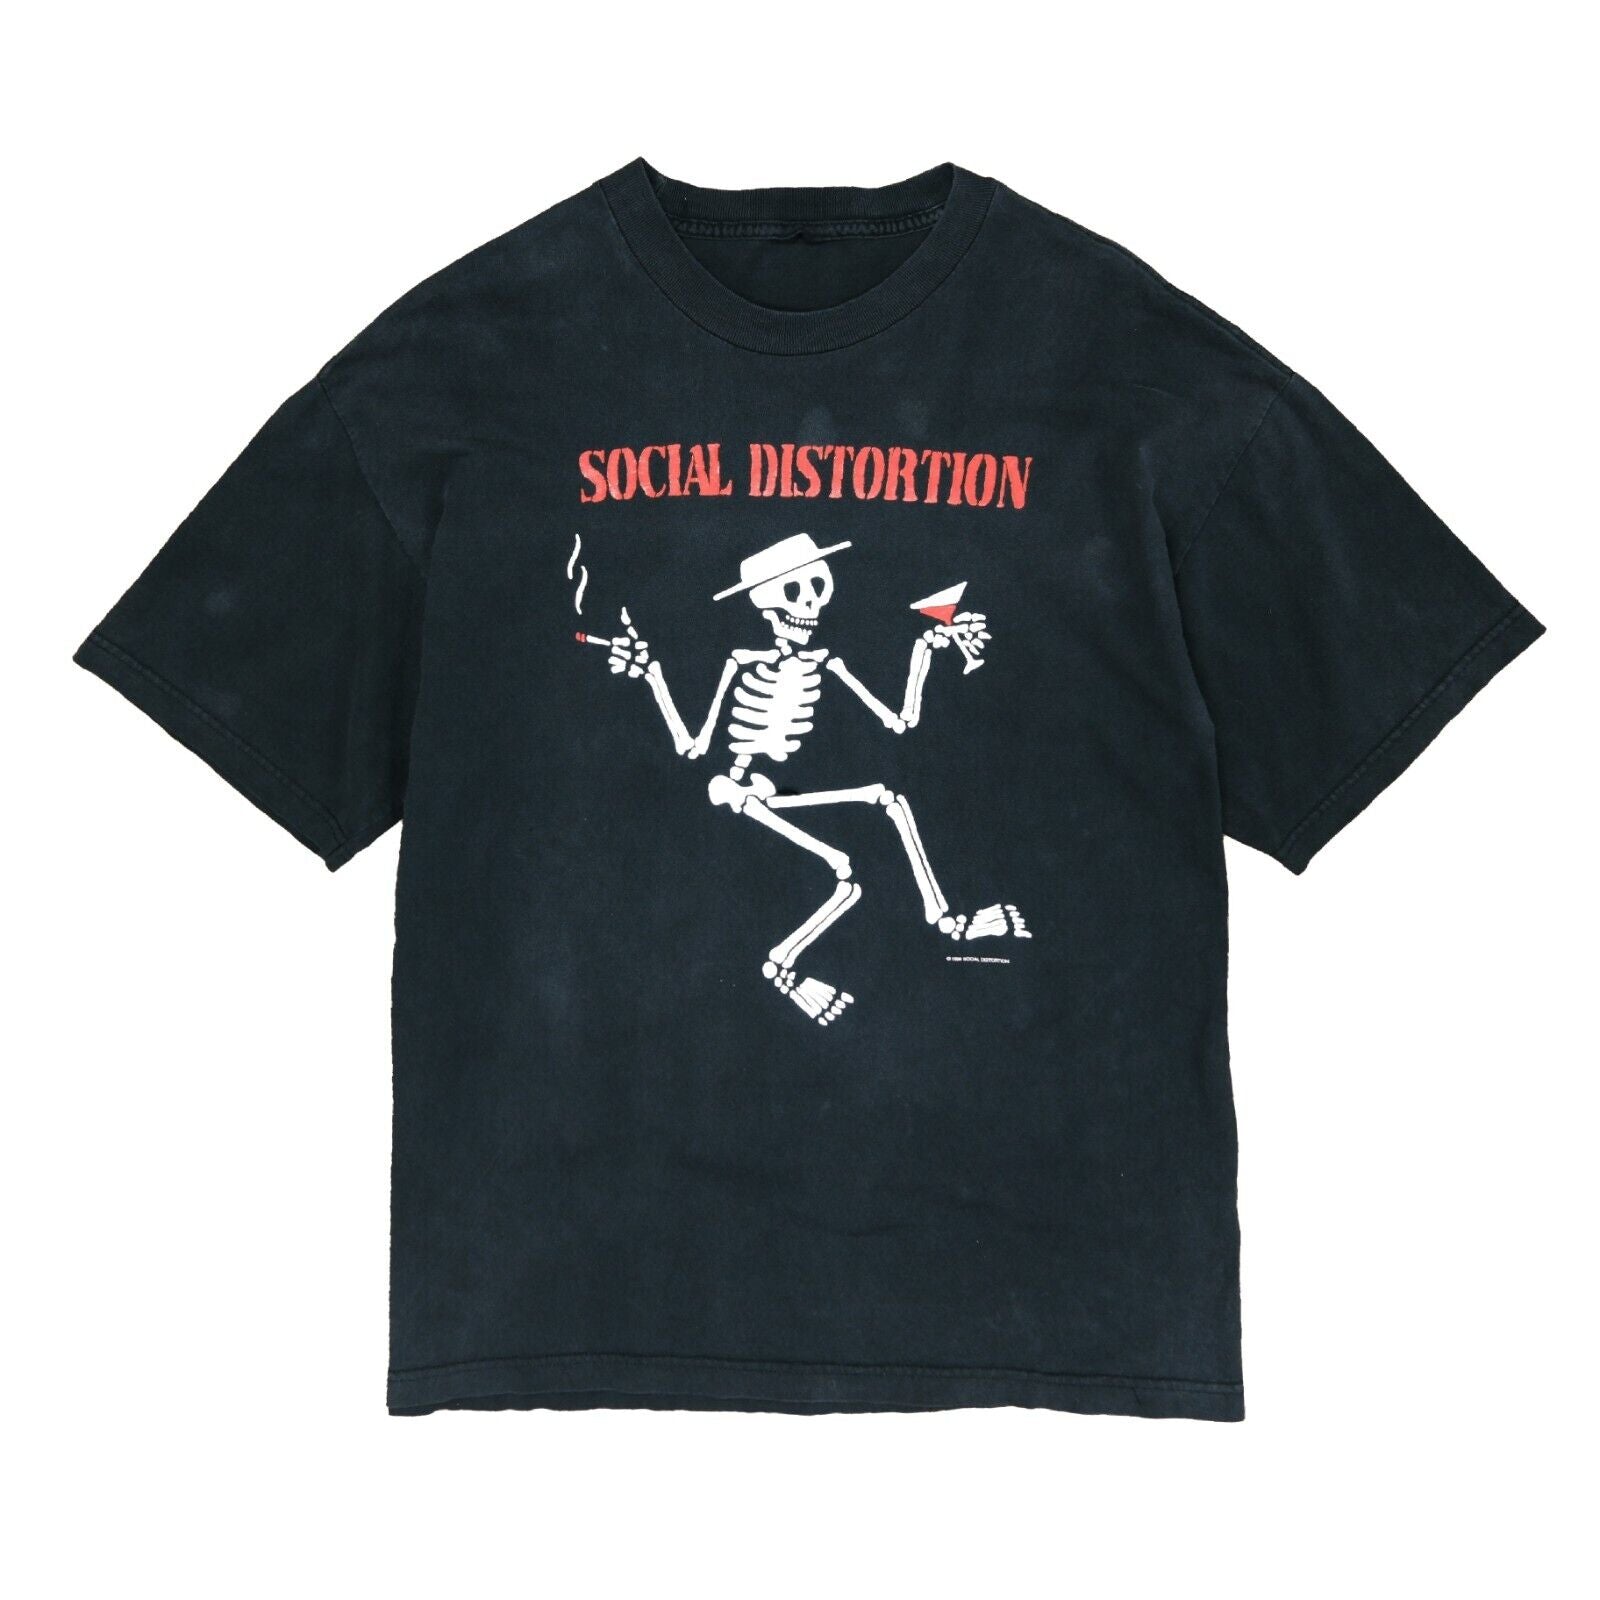 Vintage Social Distortion Skeleton T-Shirt Size Large Black Band 